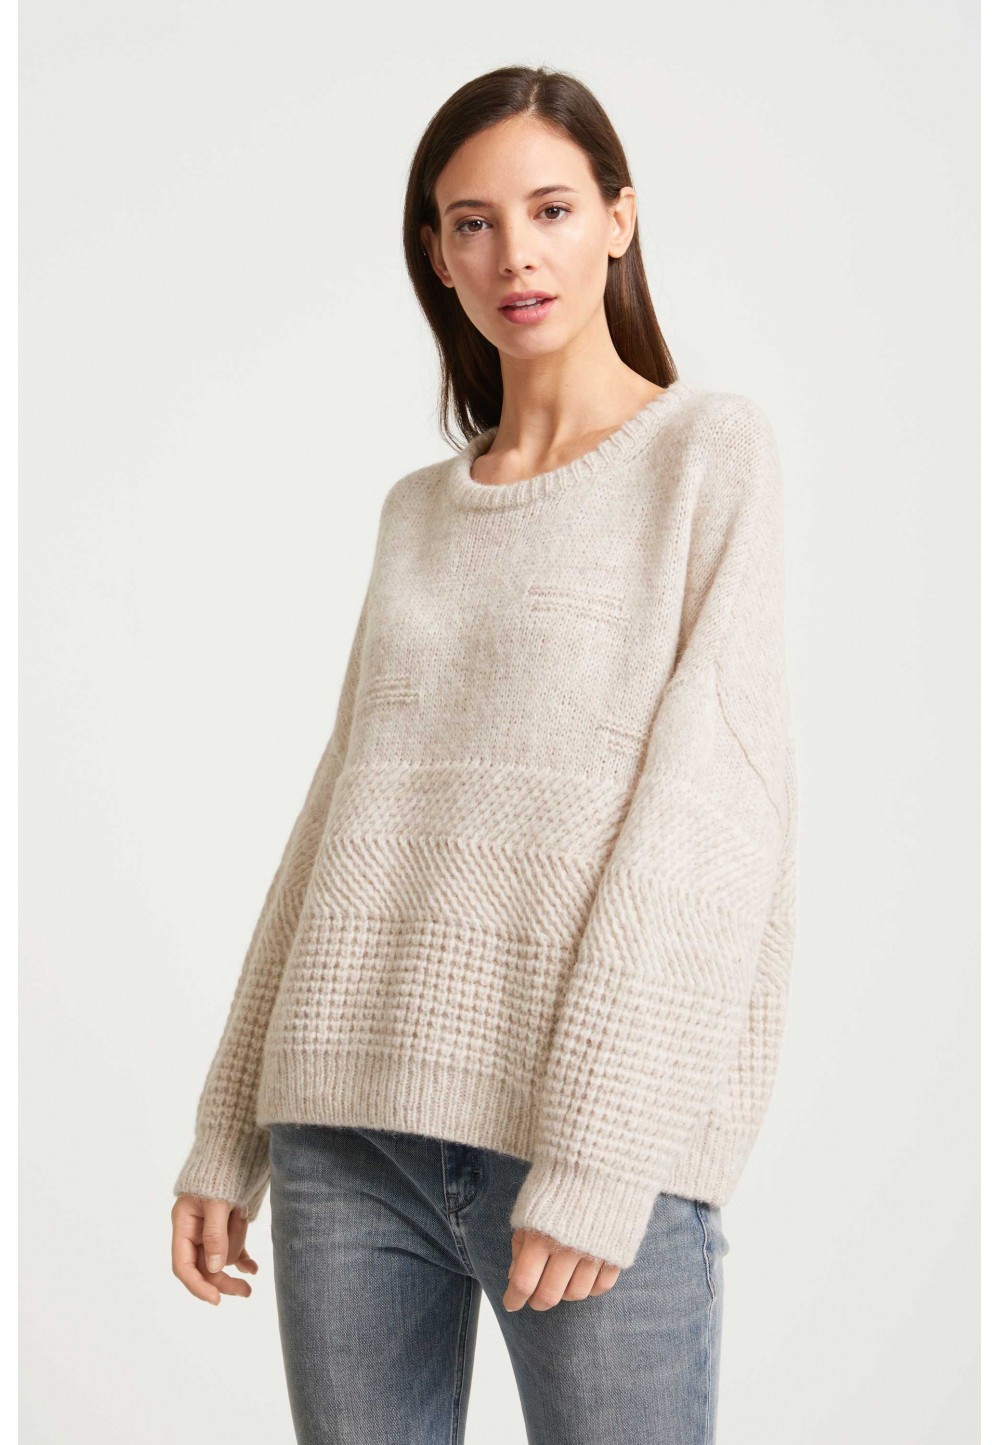 Бежевый вязаный свитер